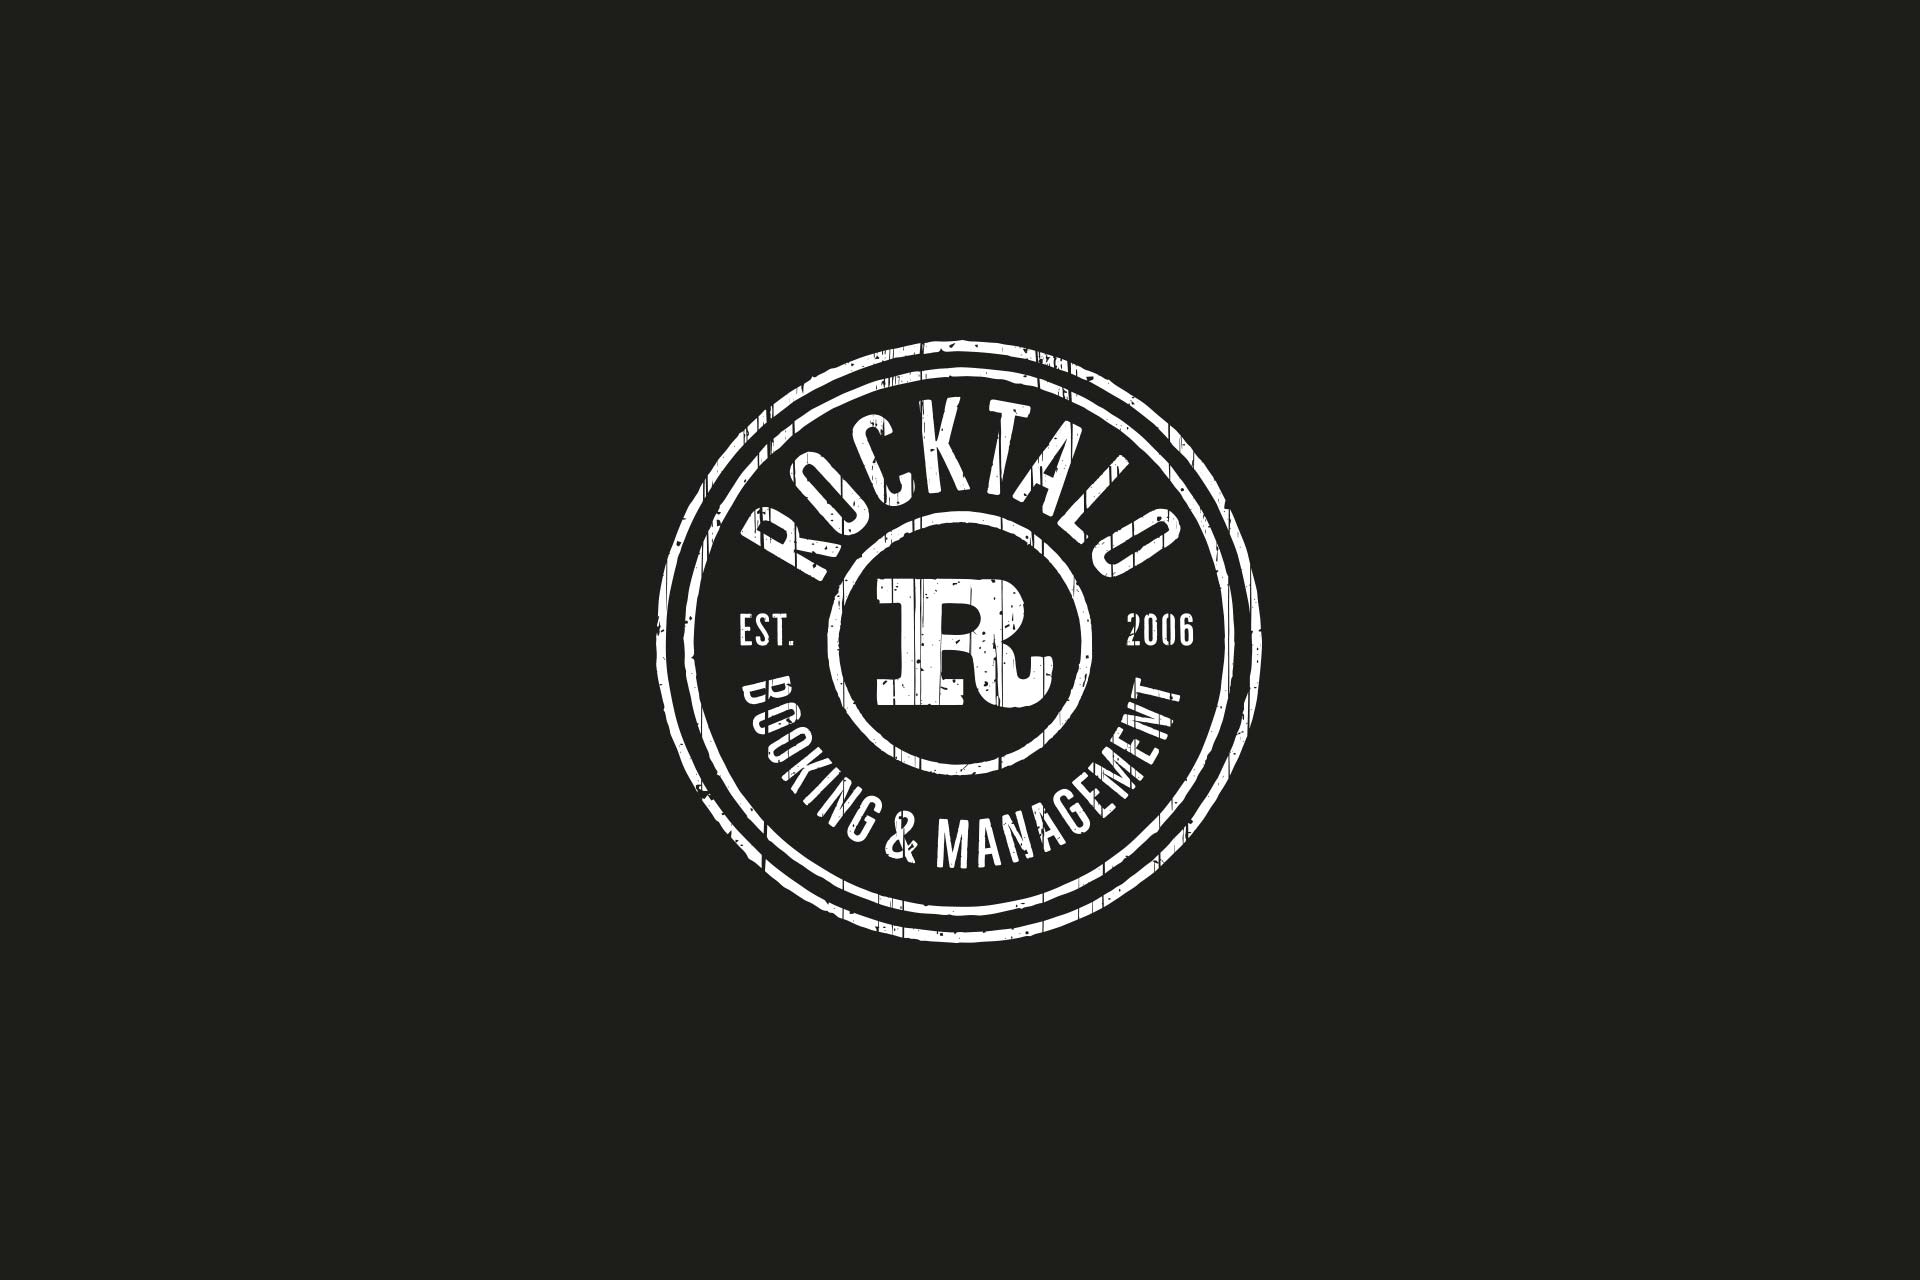 Rocktalo logo